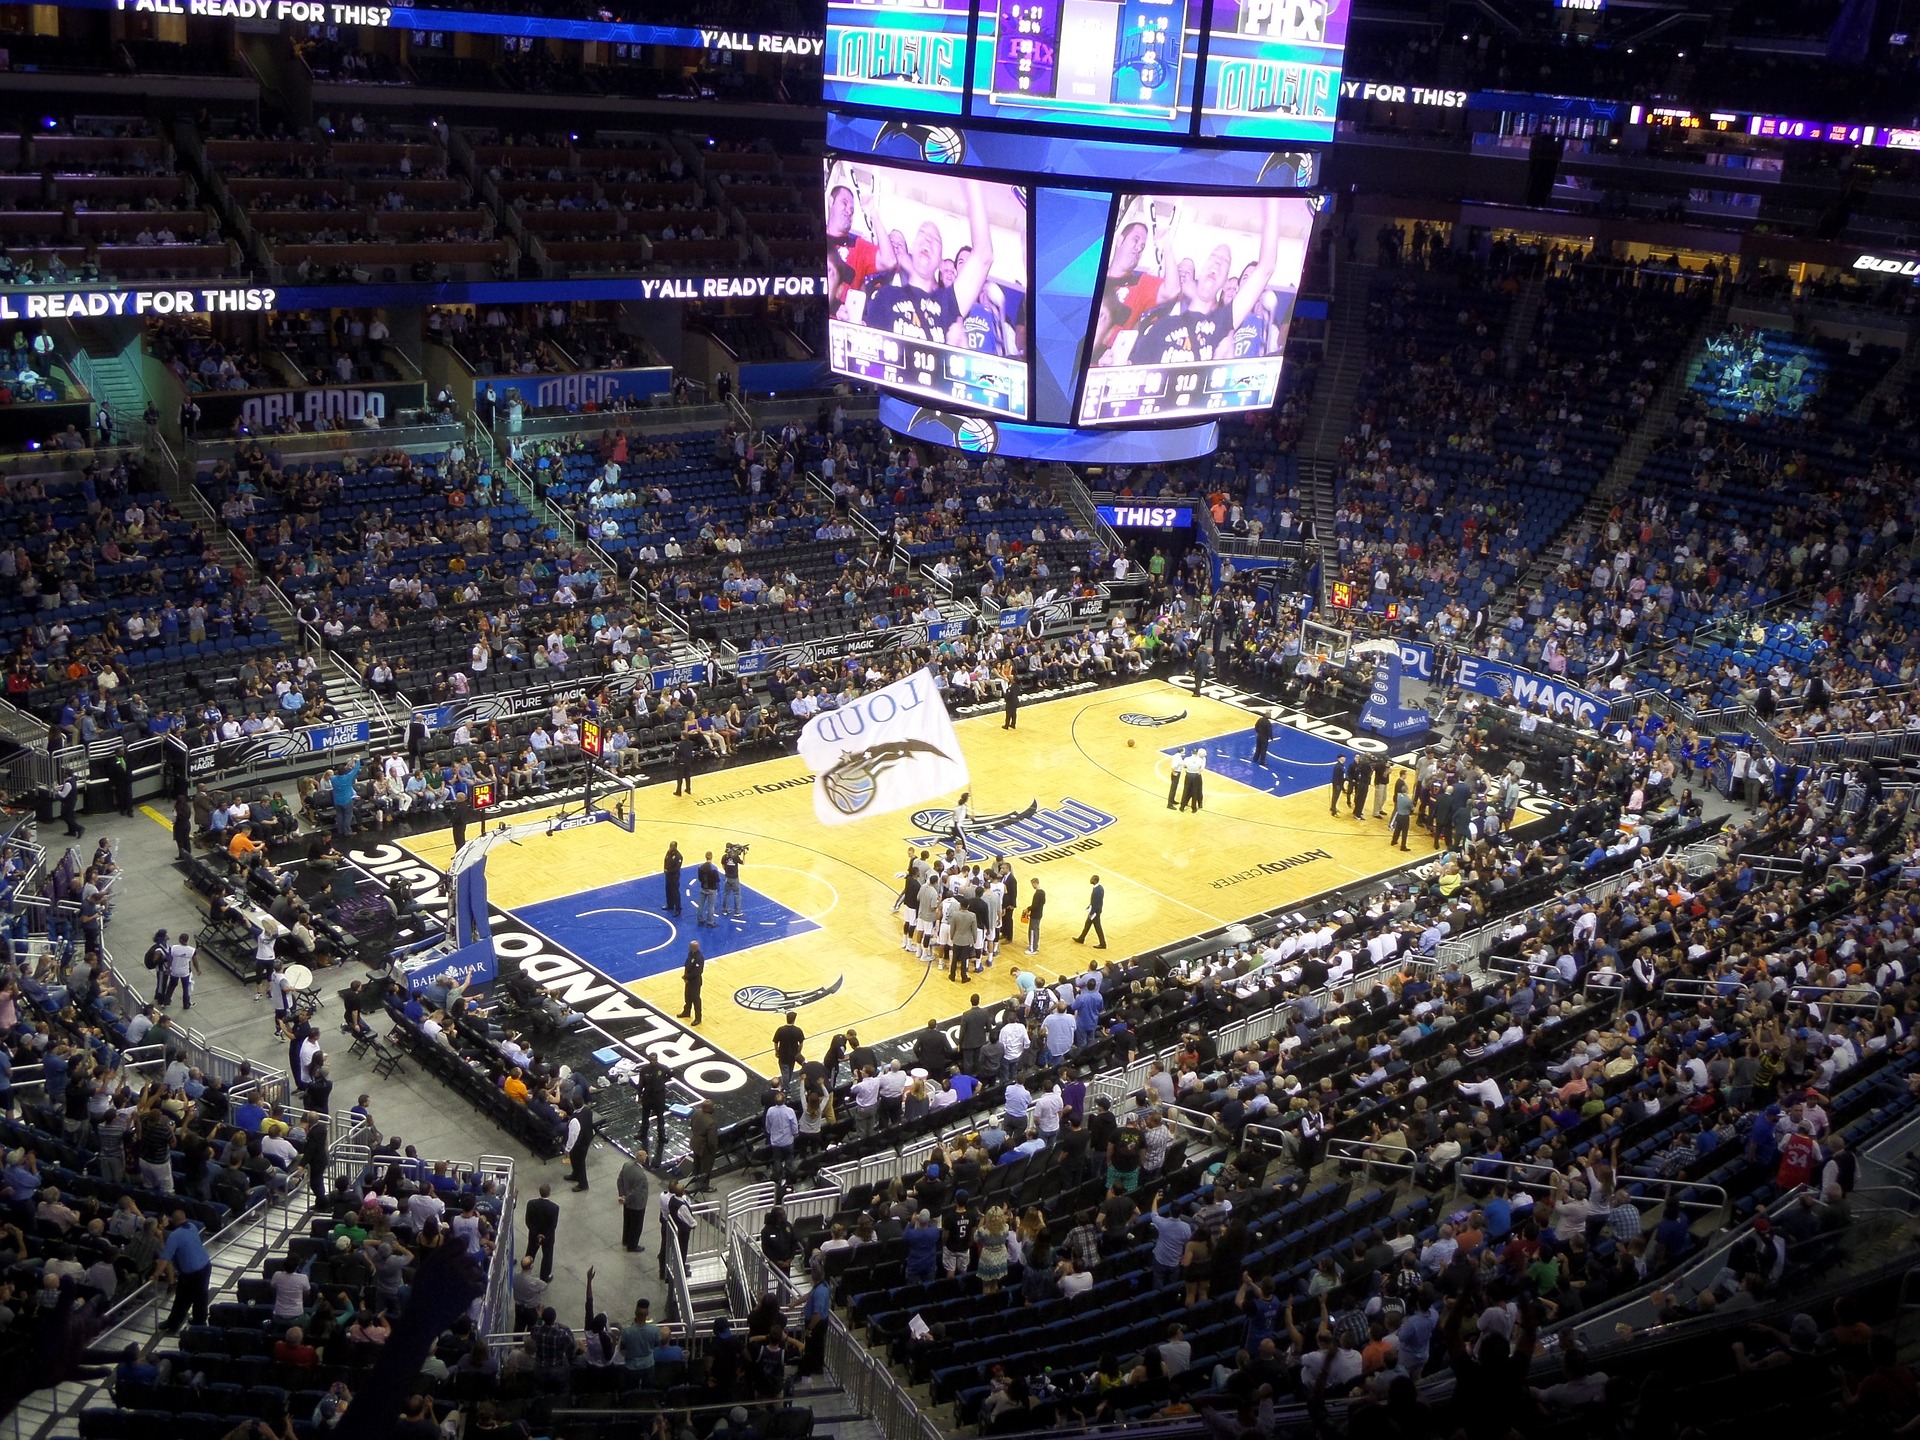 Städtereise nach Orlando - NBA gucken im Stadion der Basketeballmannschaft Orlando Magic - NBA Spiel Orlando Ticket